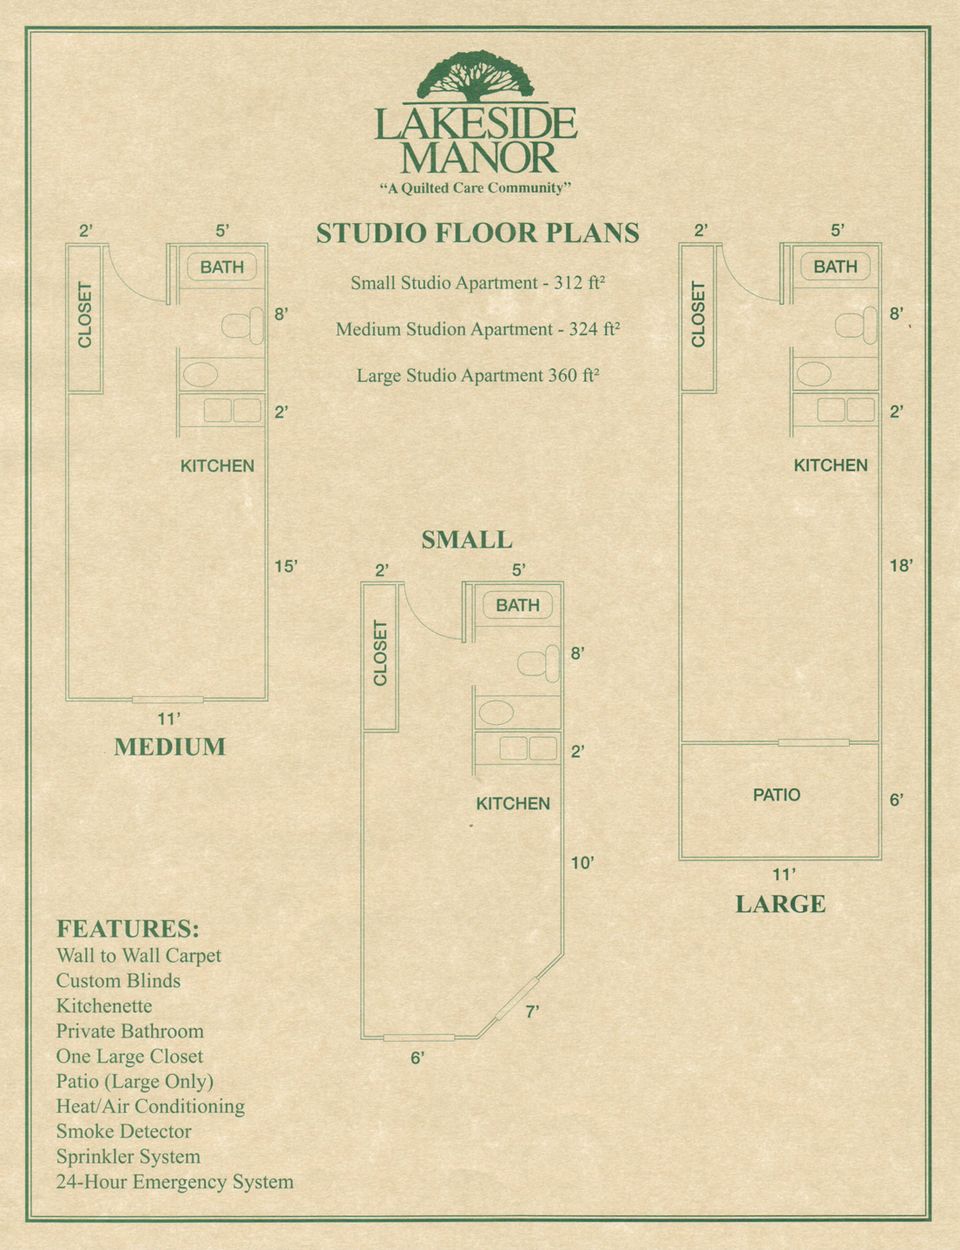 Studio floor plans